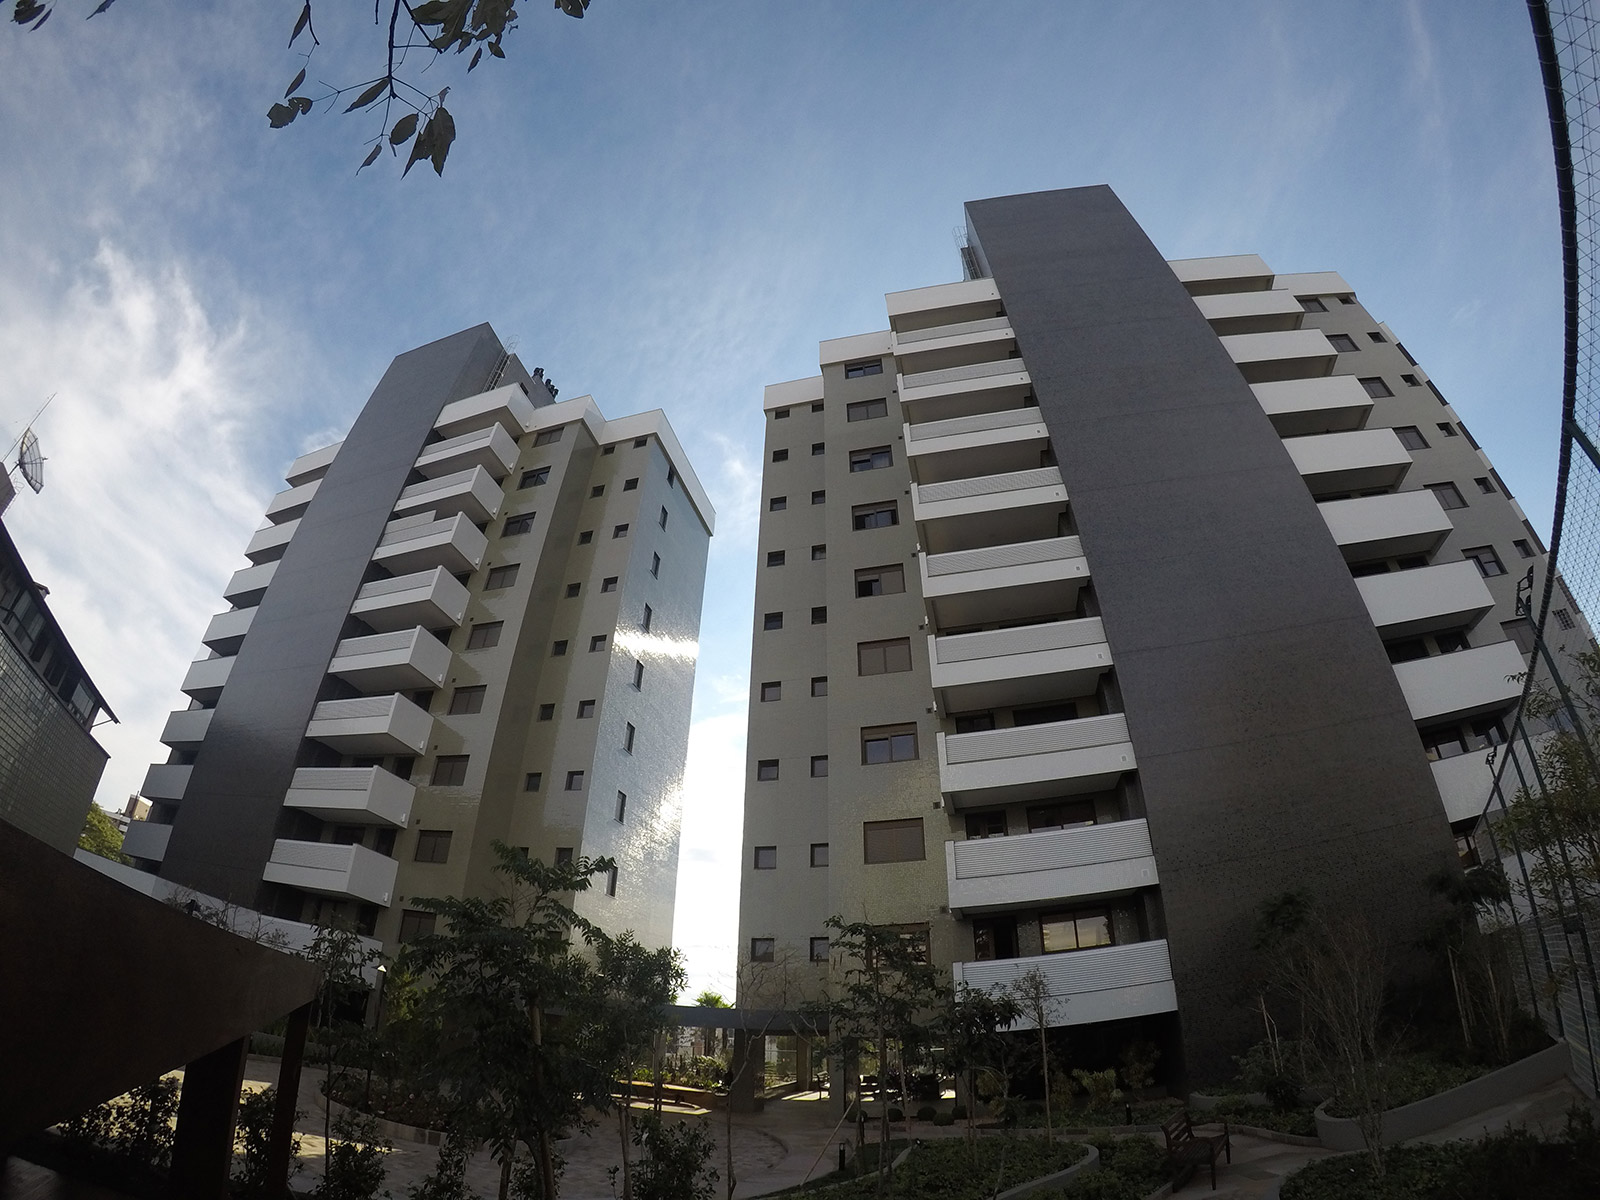 Construtora Nimbus Empreendimentos Imobiliários localizada em Bento Gonçalves – RS. Destaque no mercado imobiliário com trabalhos de sucessos, padrões de alta qualidade e com projetos diferenciados.